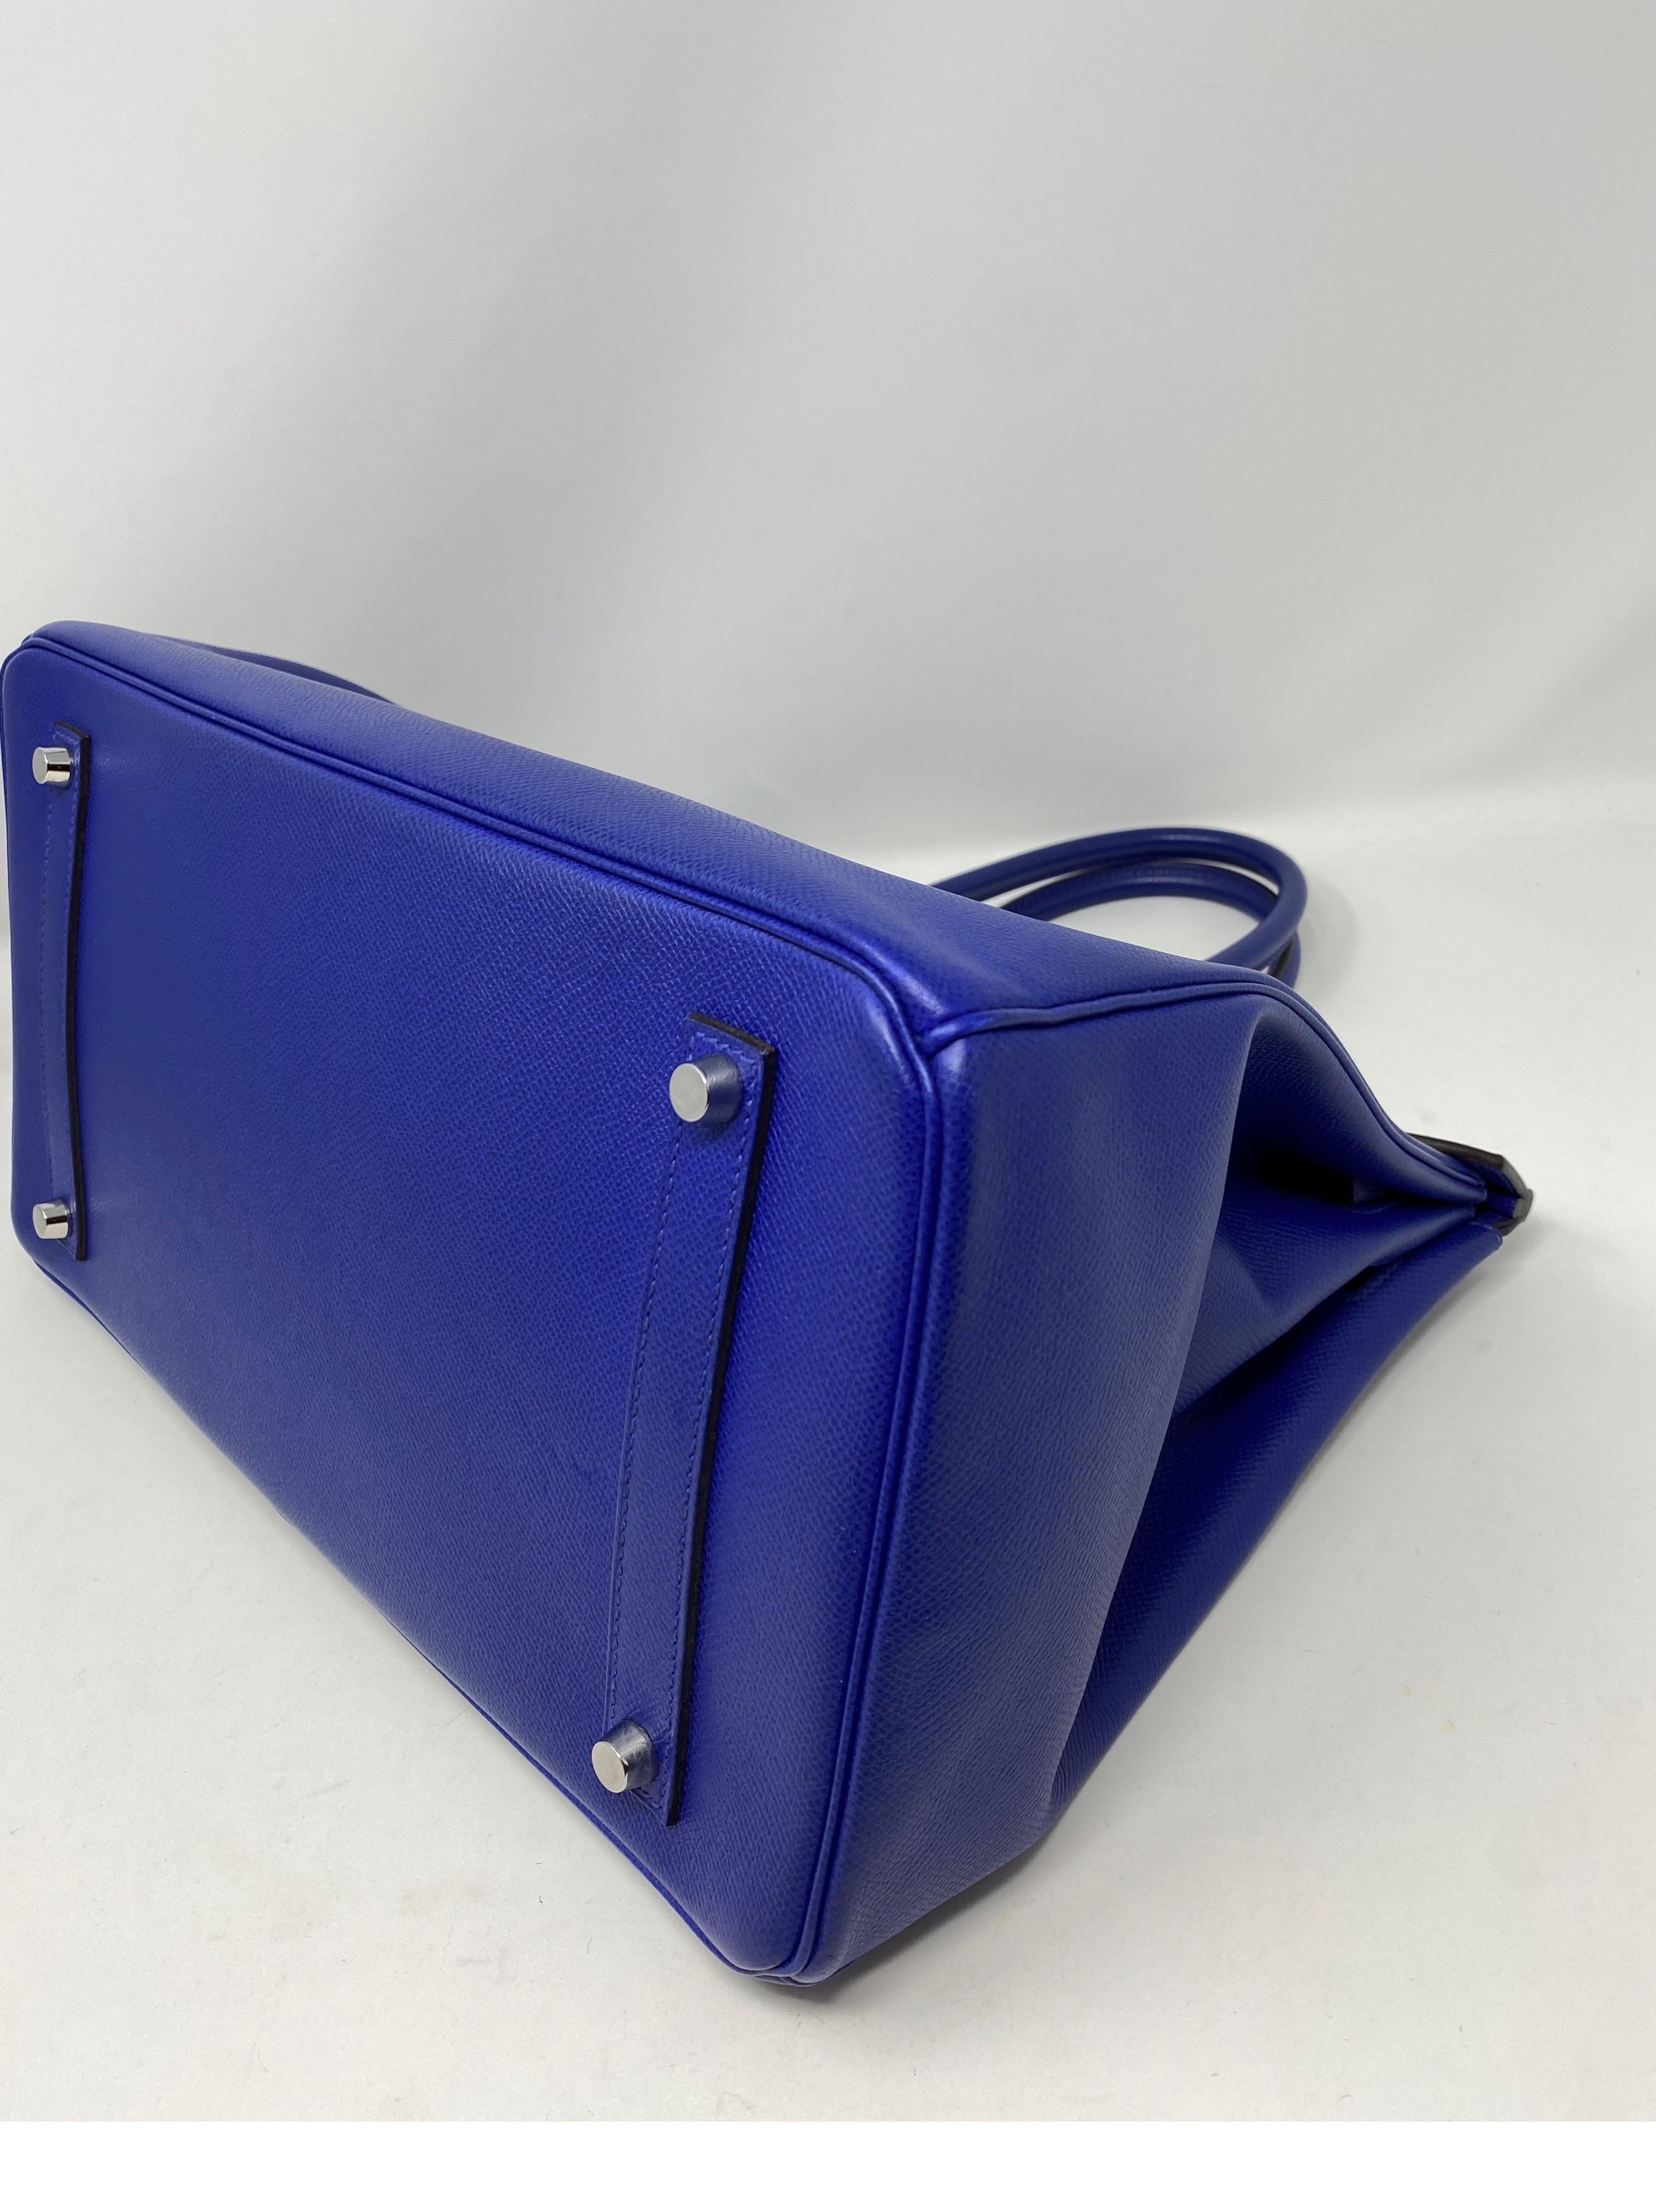 Hermes Bleu Electrique Birkin 35 Bag 6